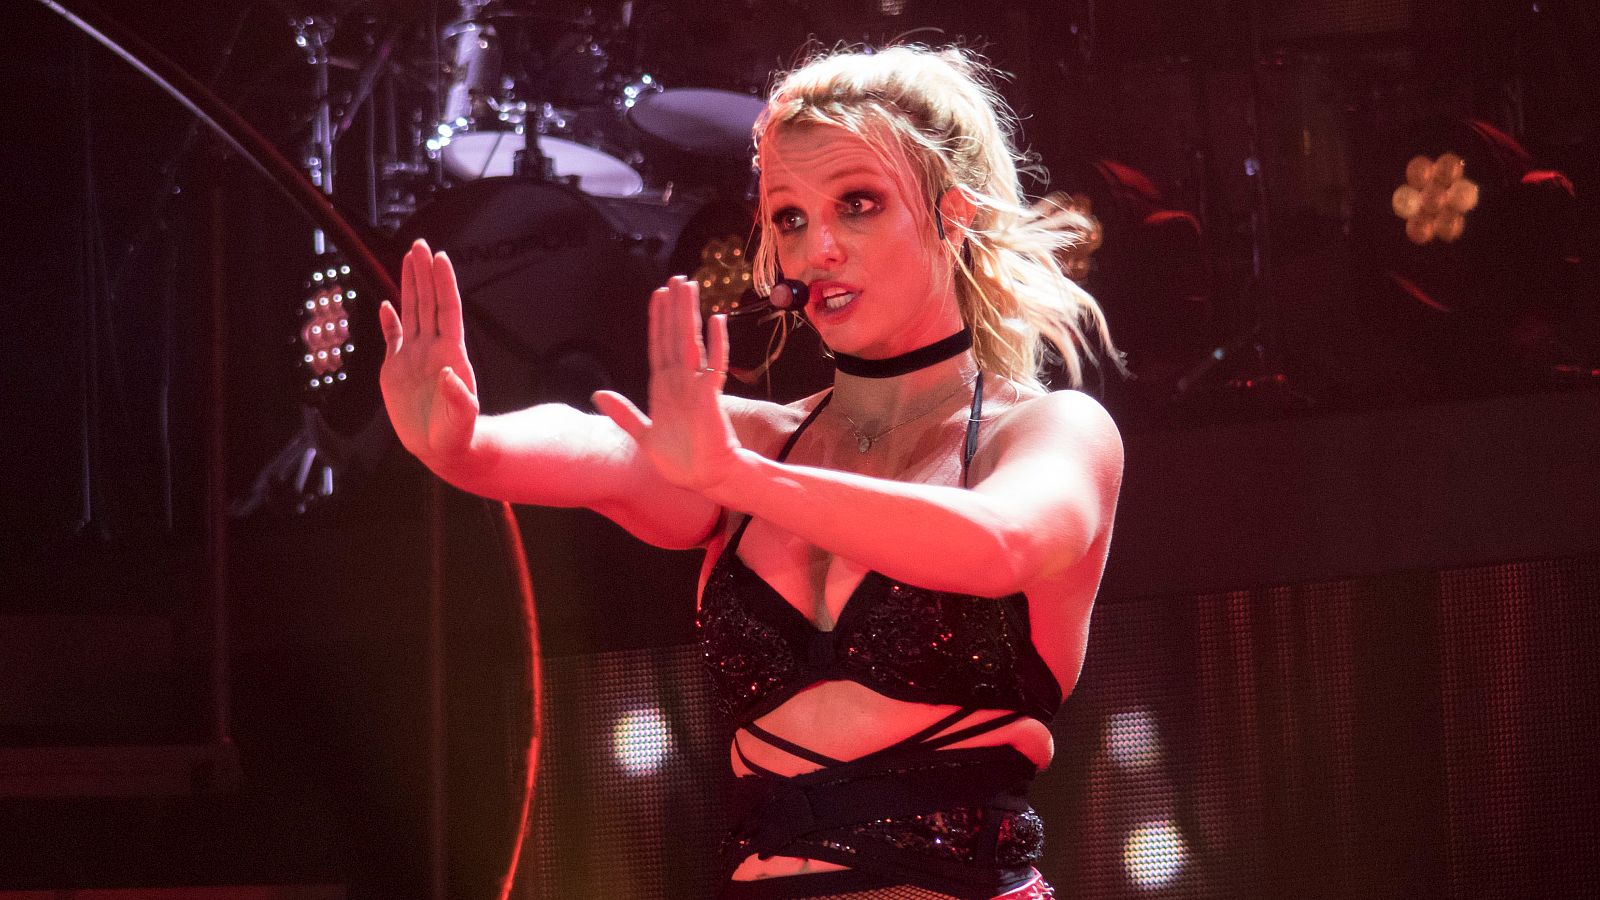  El movimiento de los seguidores de Britney Spears para liberarla de la tutela de su padre